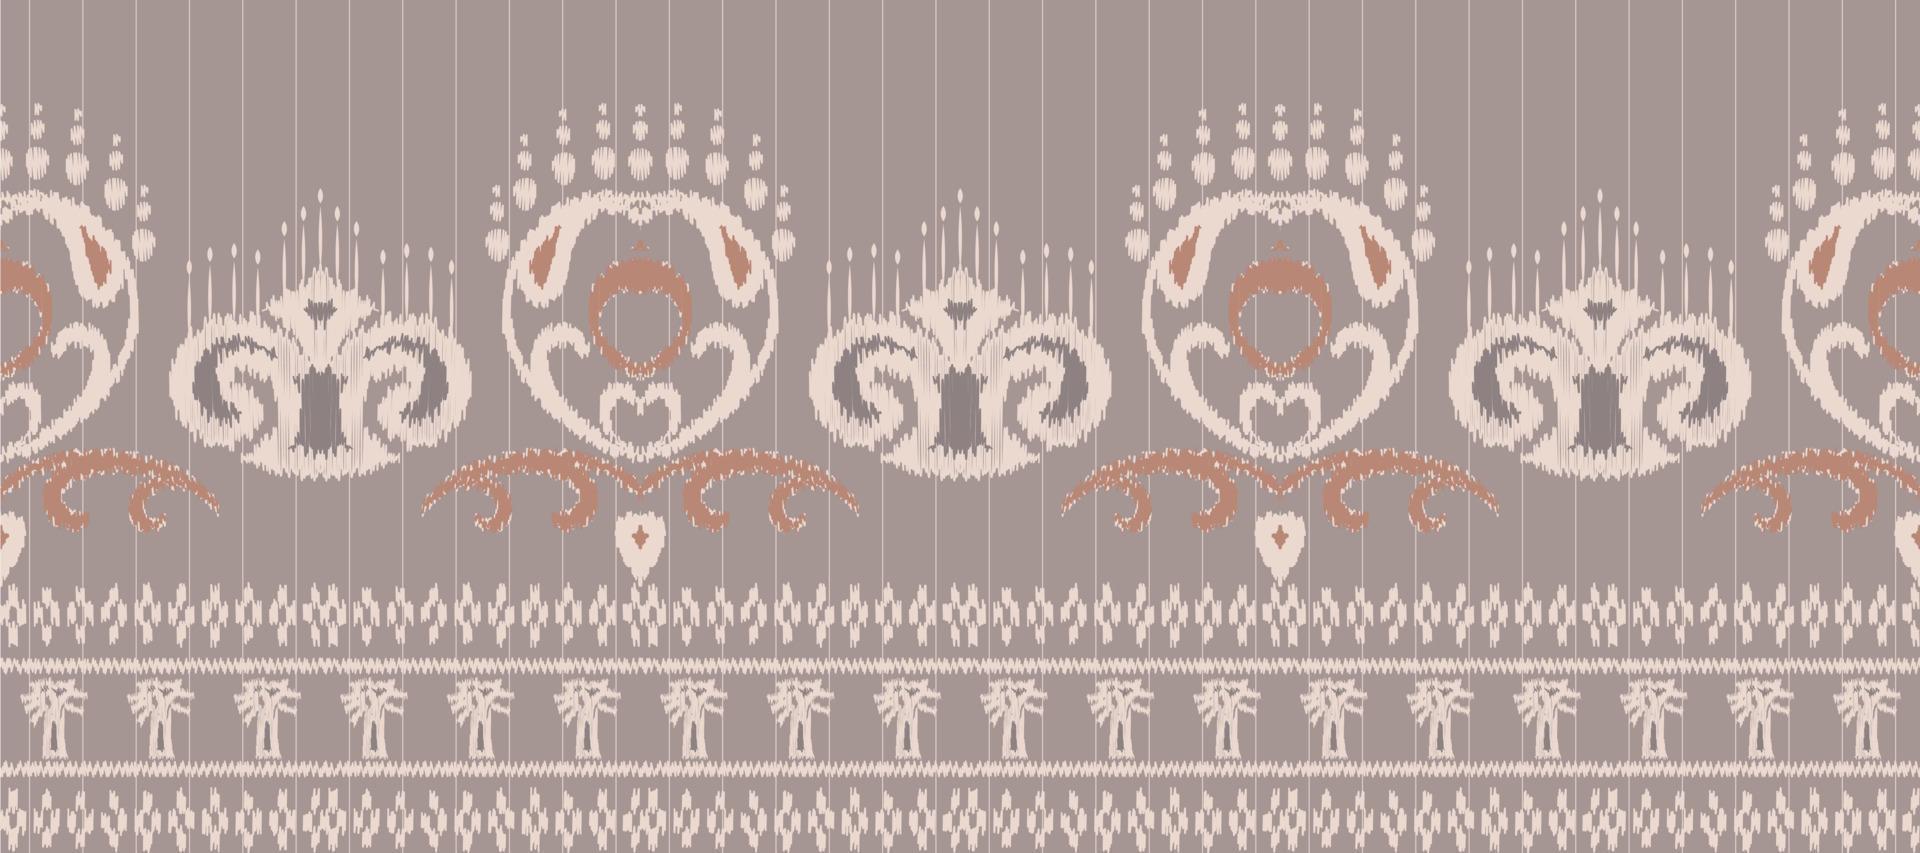 afrikansk ikat paisley mönster broderi bakgrund. geometrisk etnisk orientalisk mönster traditionell. ikat aztec stil abstrakt vektor illustration. design för skriva ut textur, tyg, saree, sari, matta.